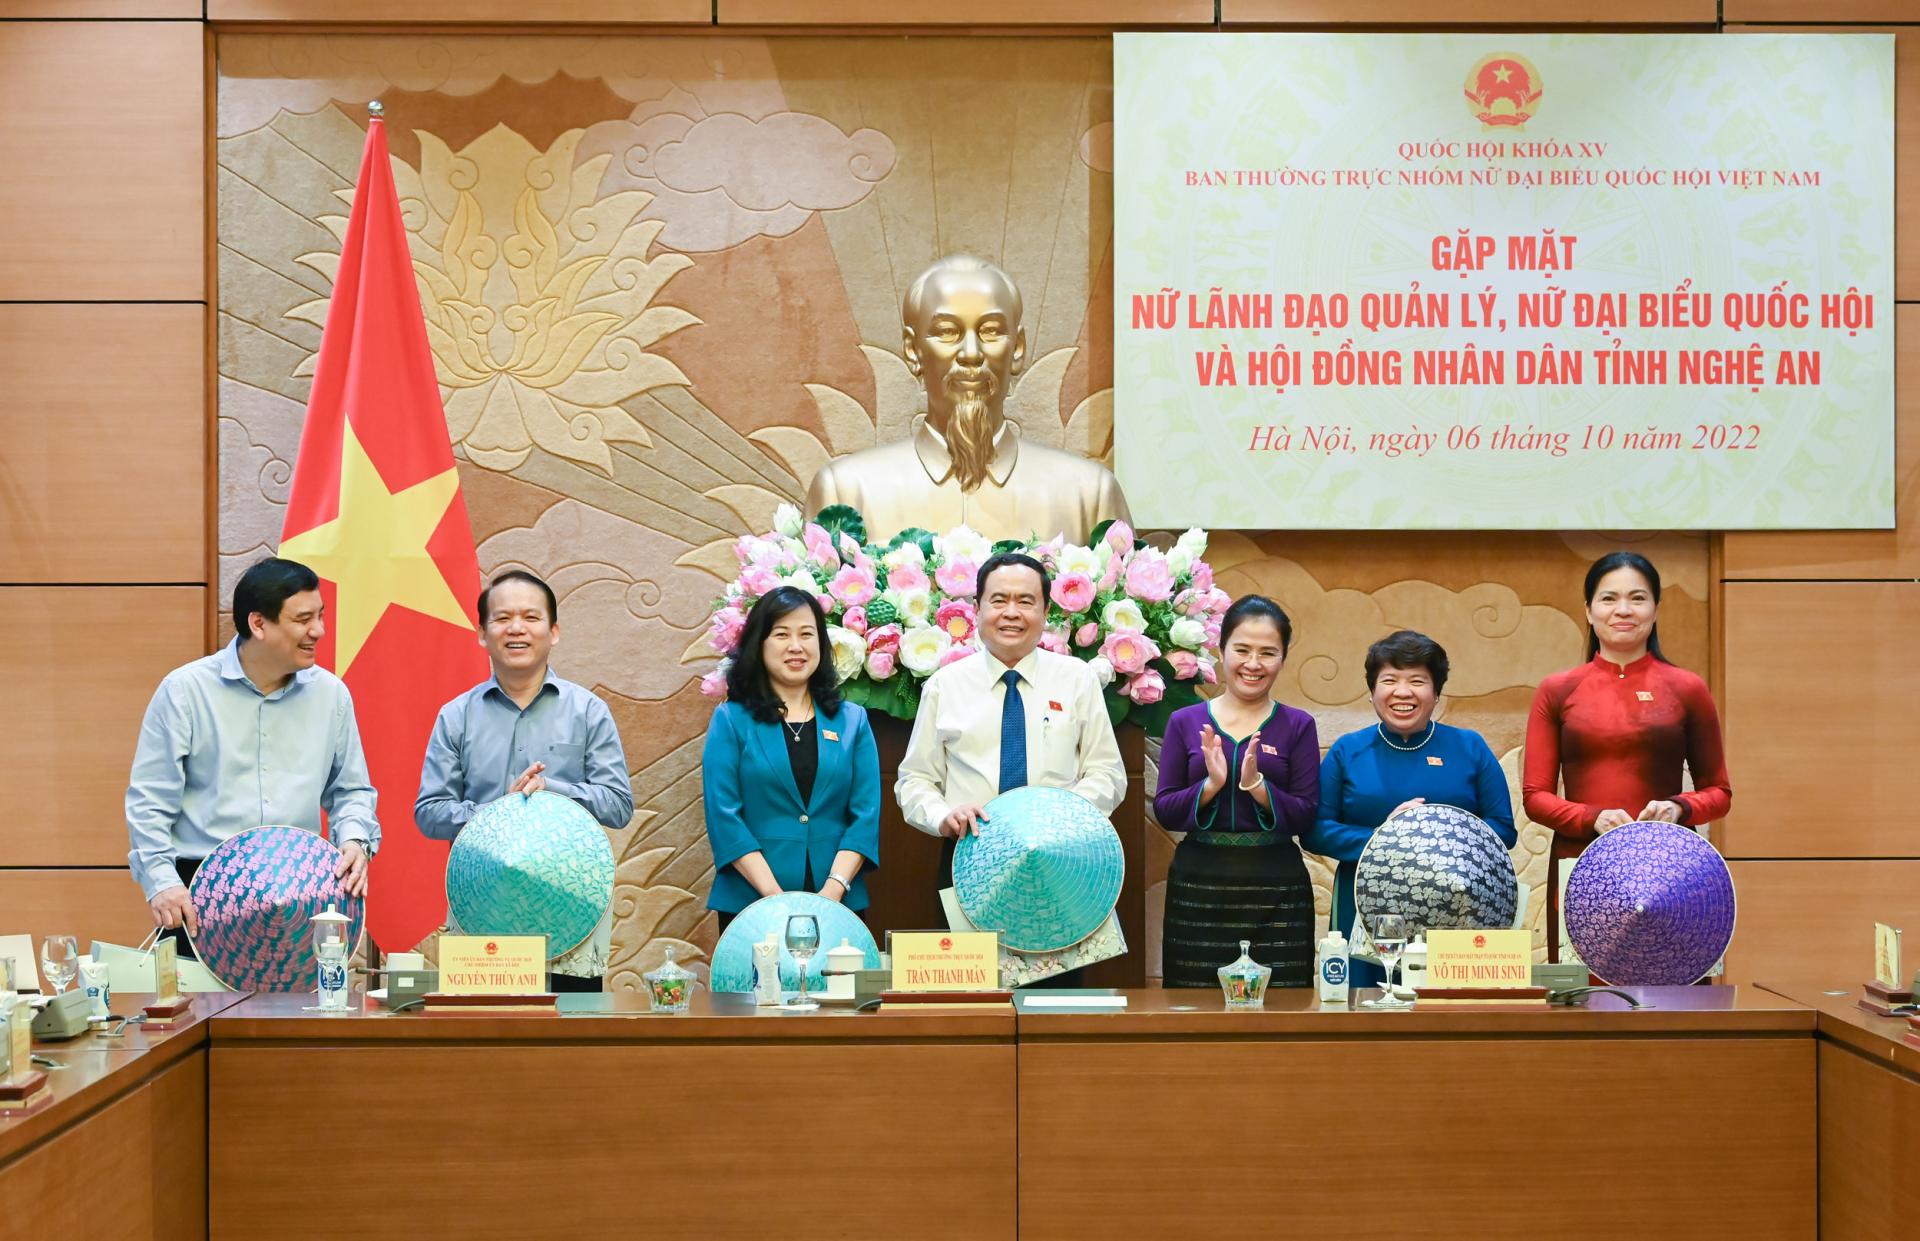 Chủ tịch Nhóm nữ đại biểu Quốc hội và HĐND tỉnh Nghệ An Võ Thị Minh Sinh tặng quà cho Phó Chủ tịch Thường trực Quốc hội Trần Thanh Mẫn và các đại biểu. 